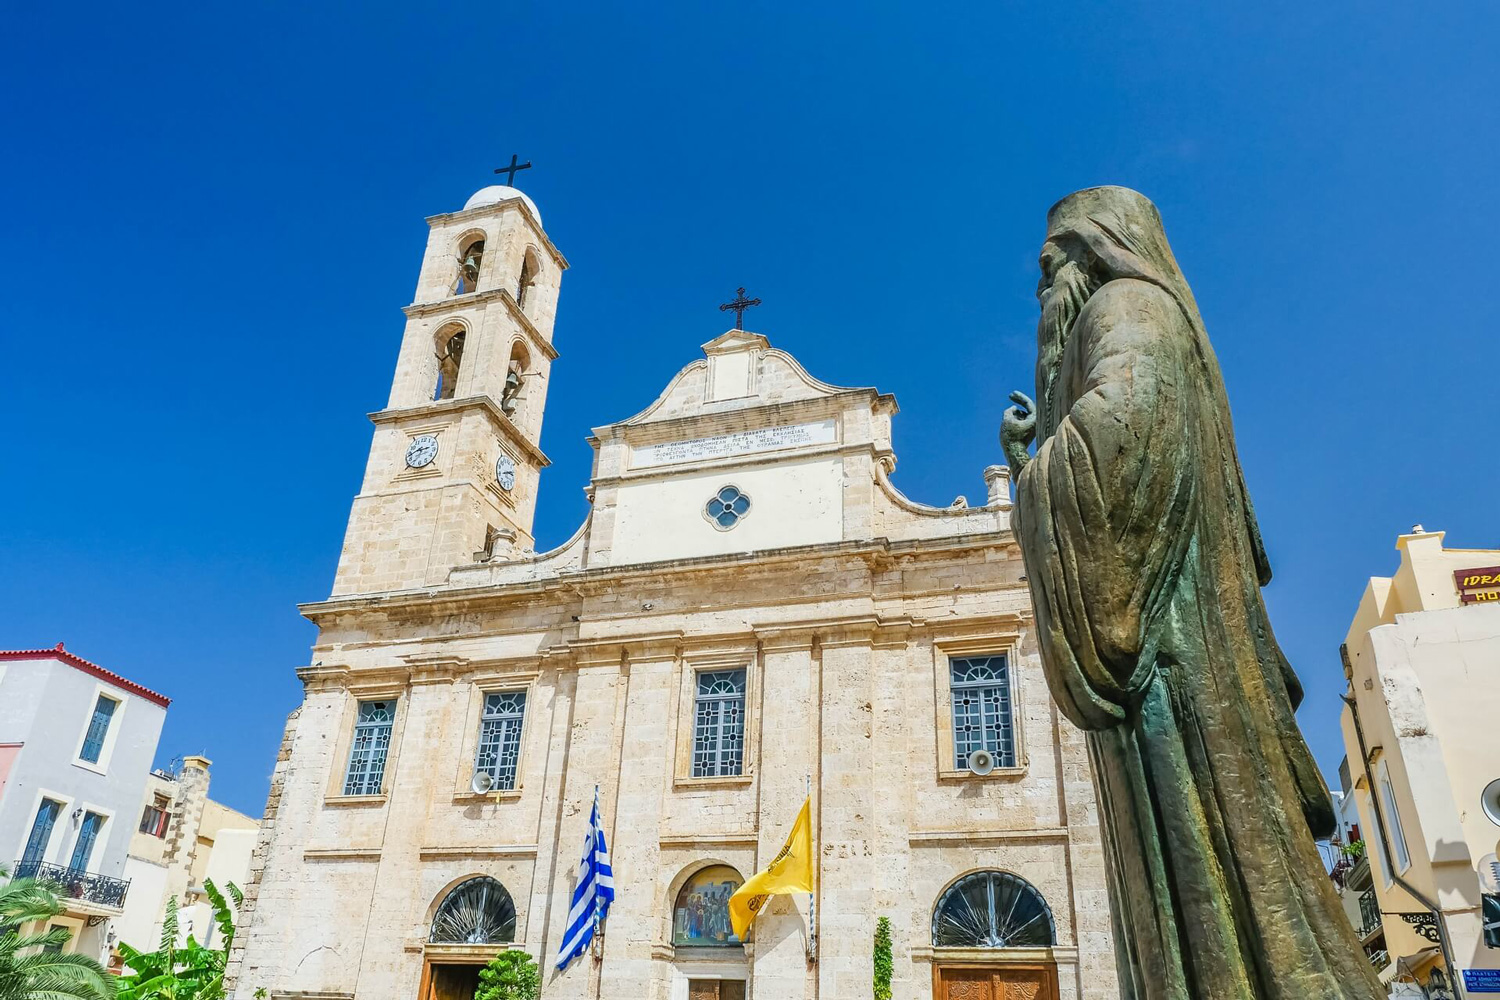 Statue infront of the Mitropoli Church